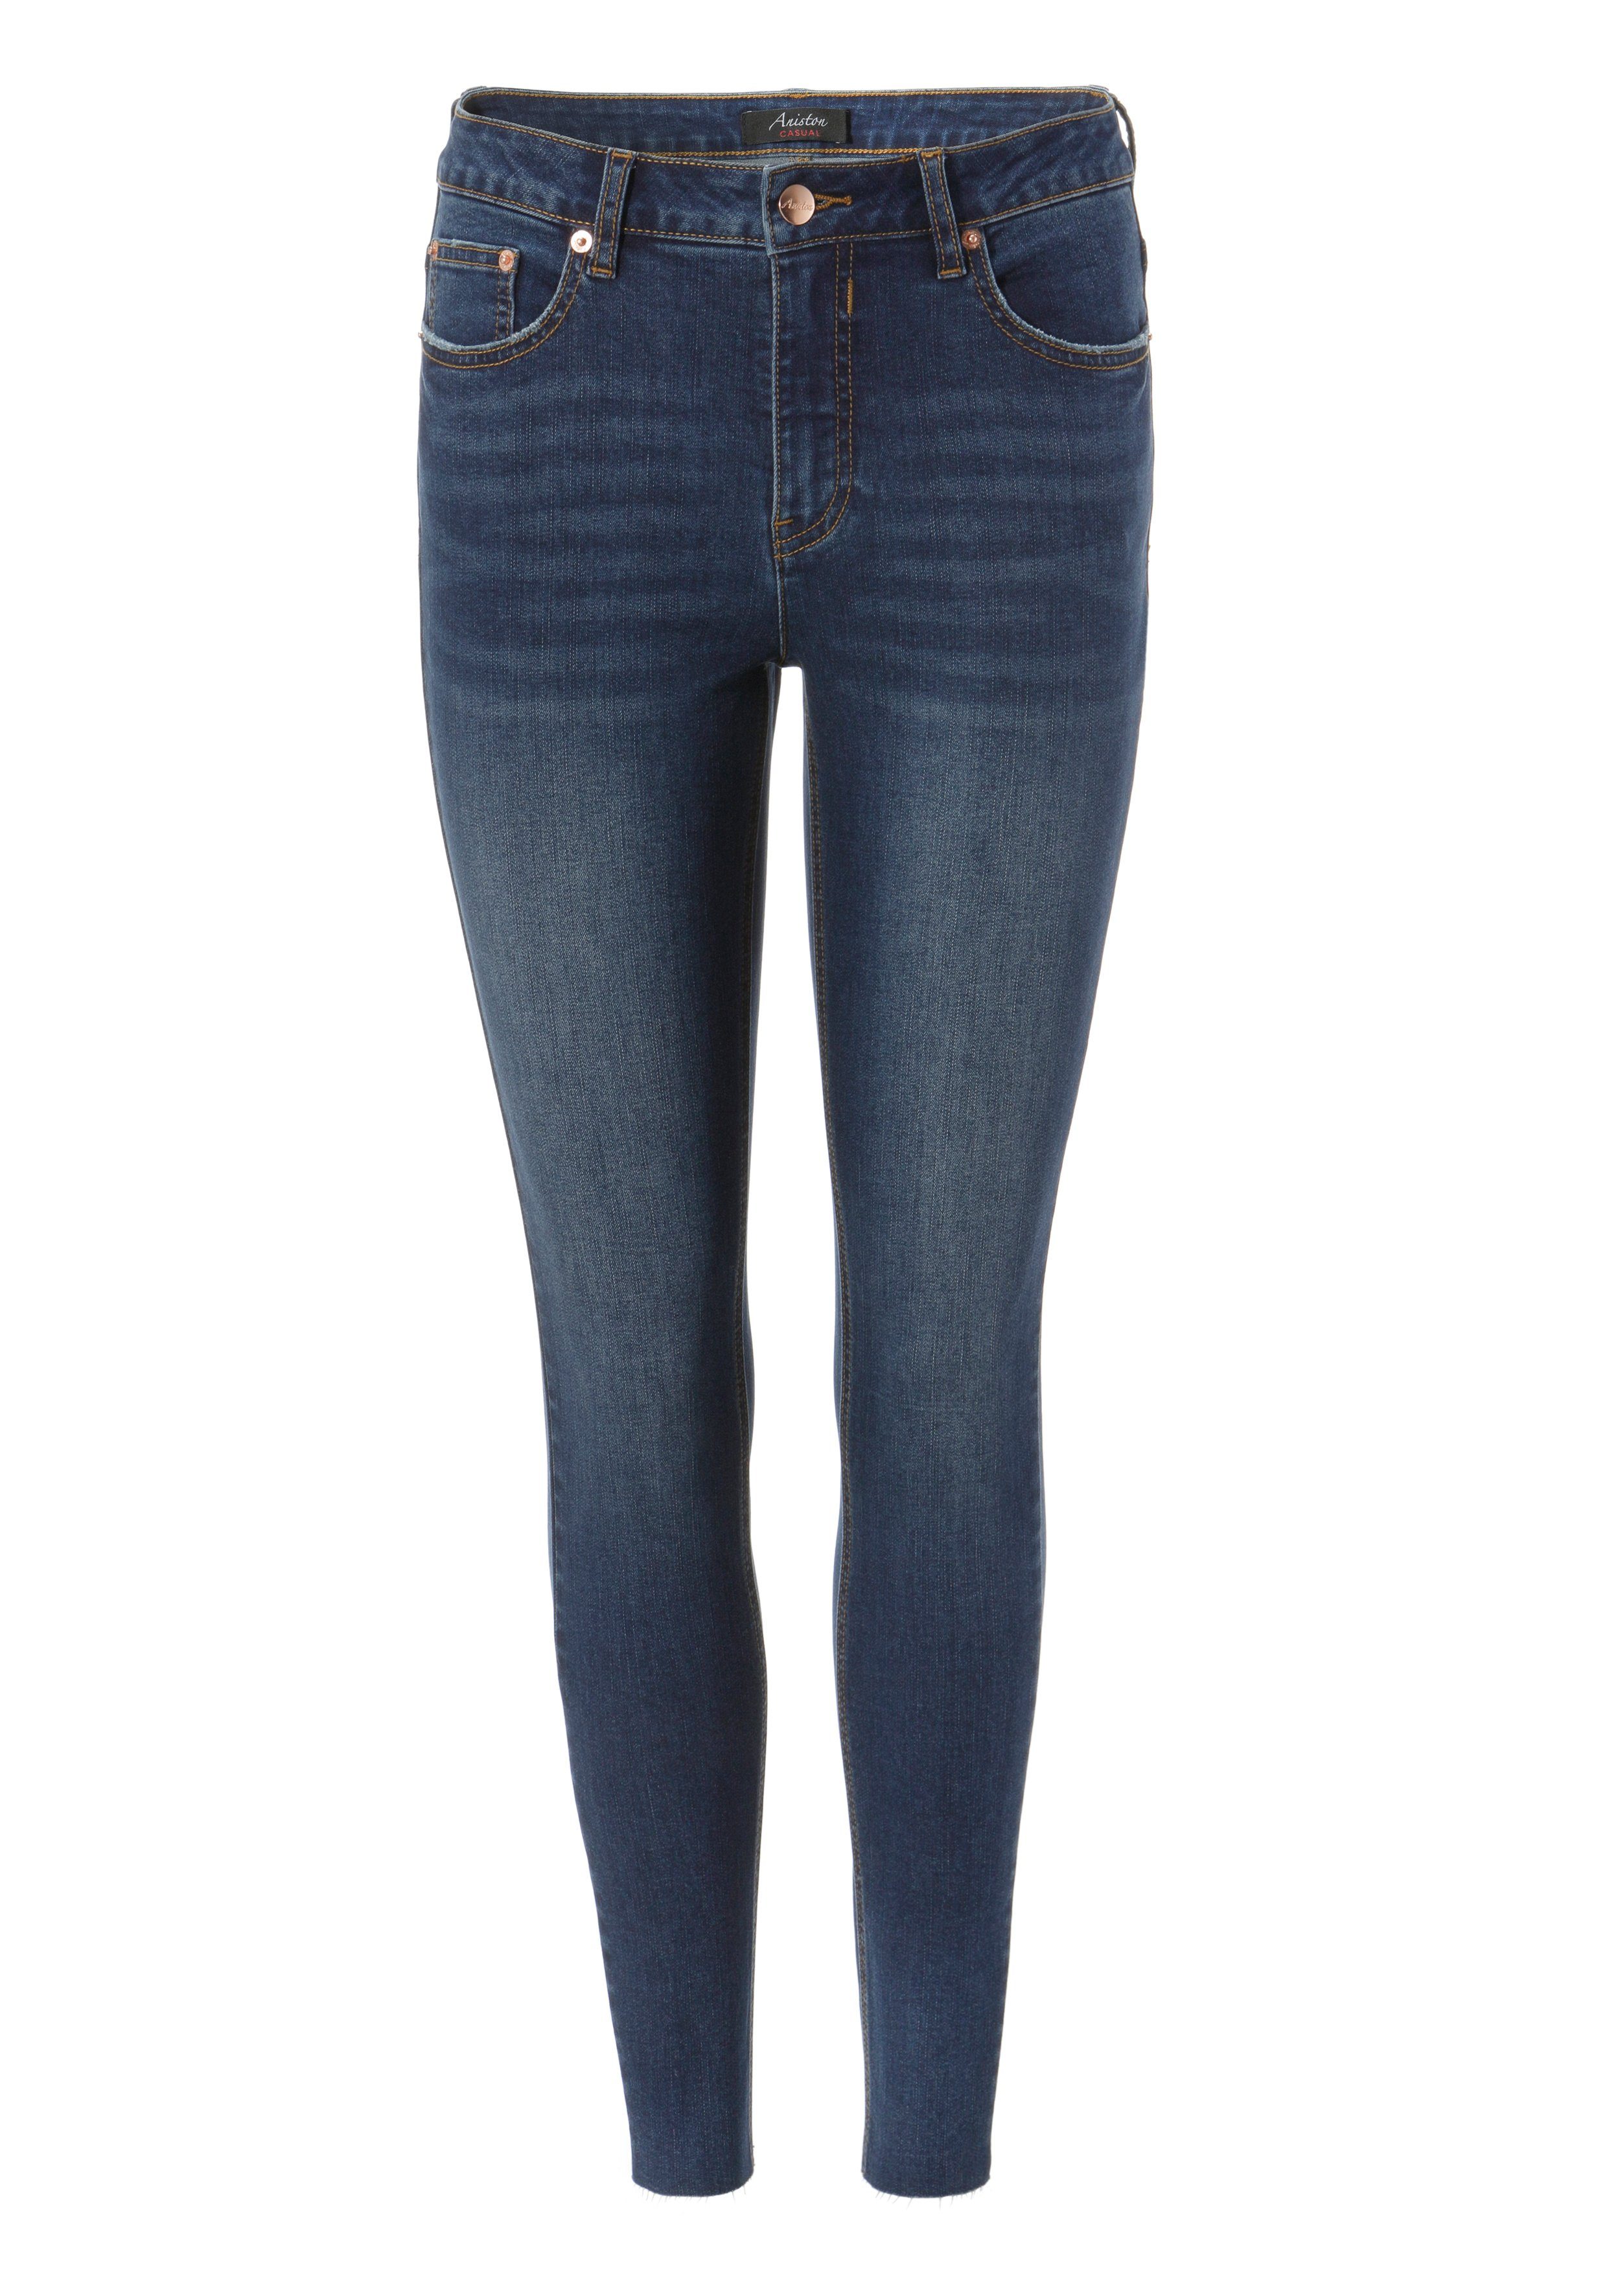 ausgefransten Aniston waist regular Beinabschluss darkblue - mit CASUAL Skinny-fit-Jeans